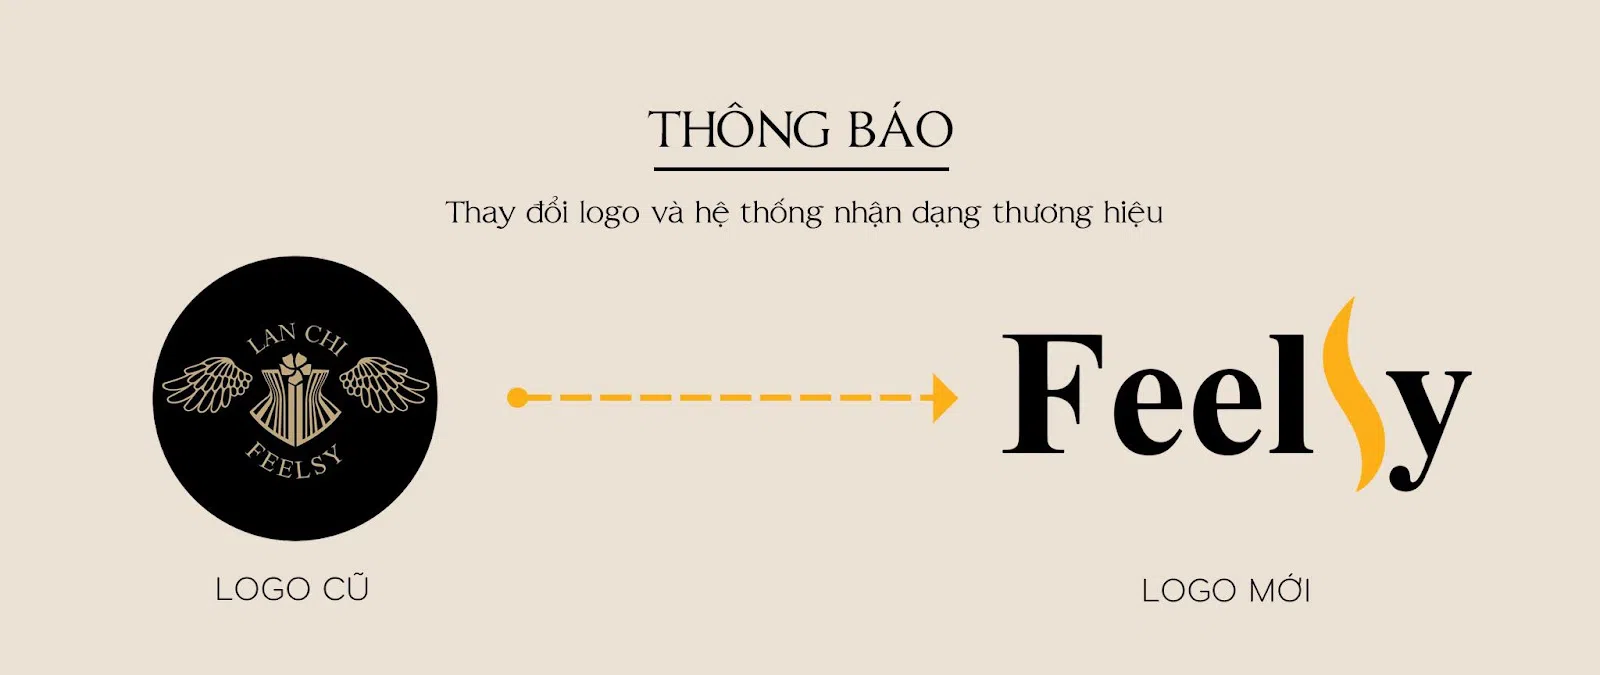 Feelsy công bố nhận diện thương hiệu mới - Dòng định hình số 1 Việt Nam